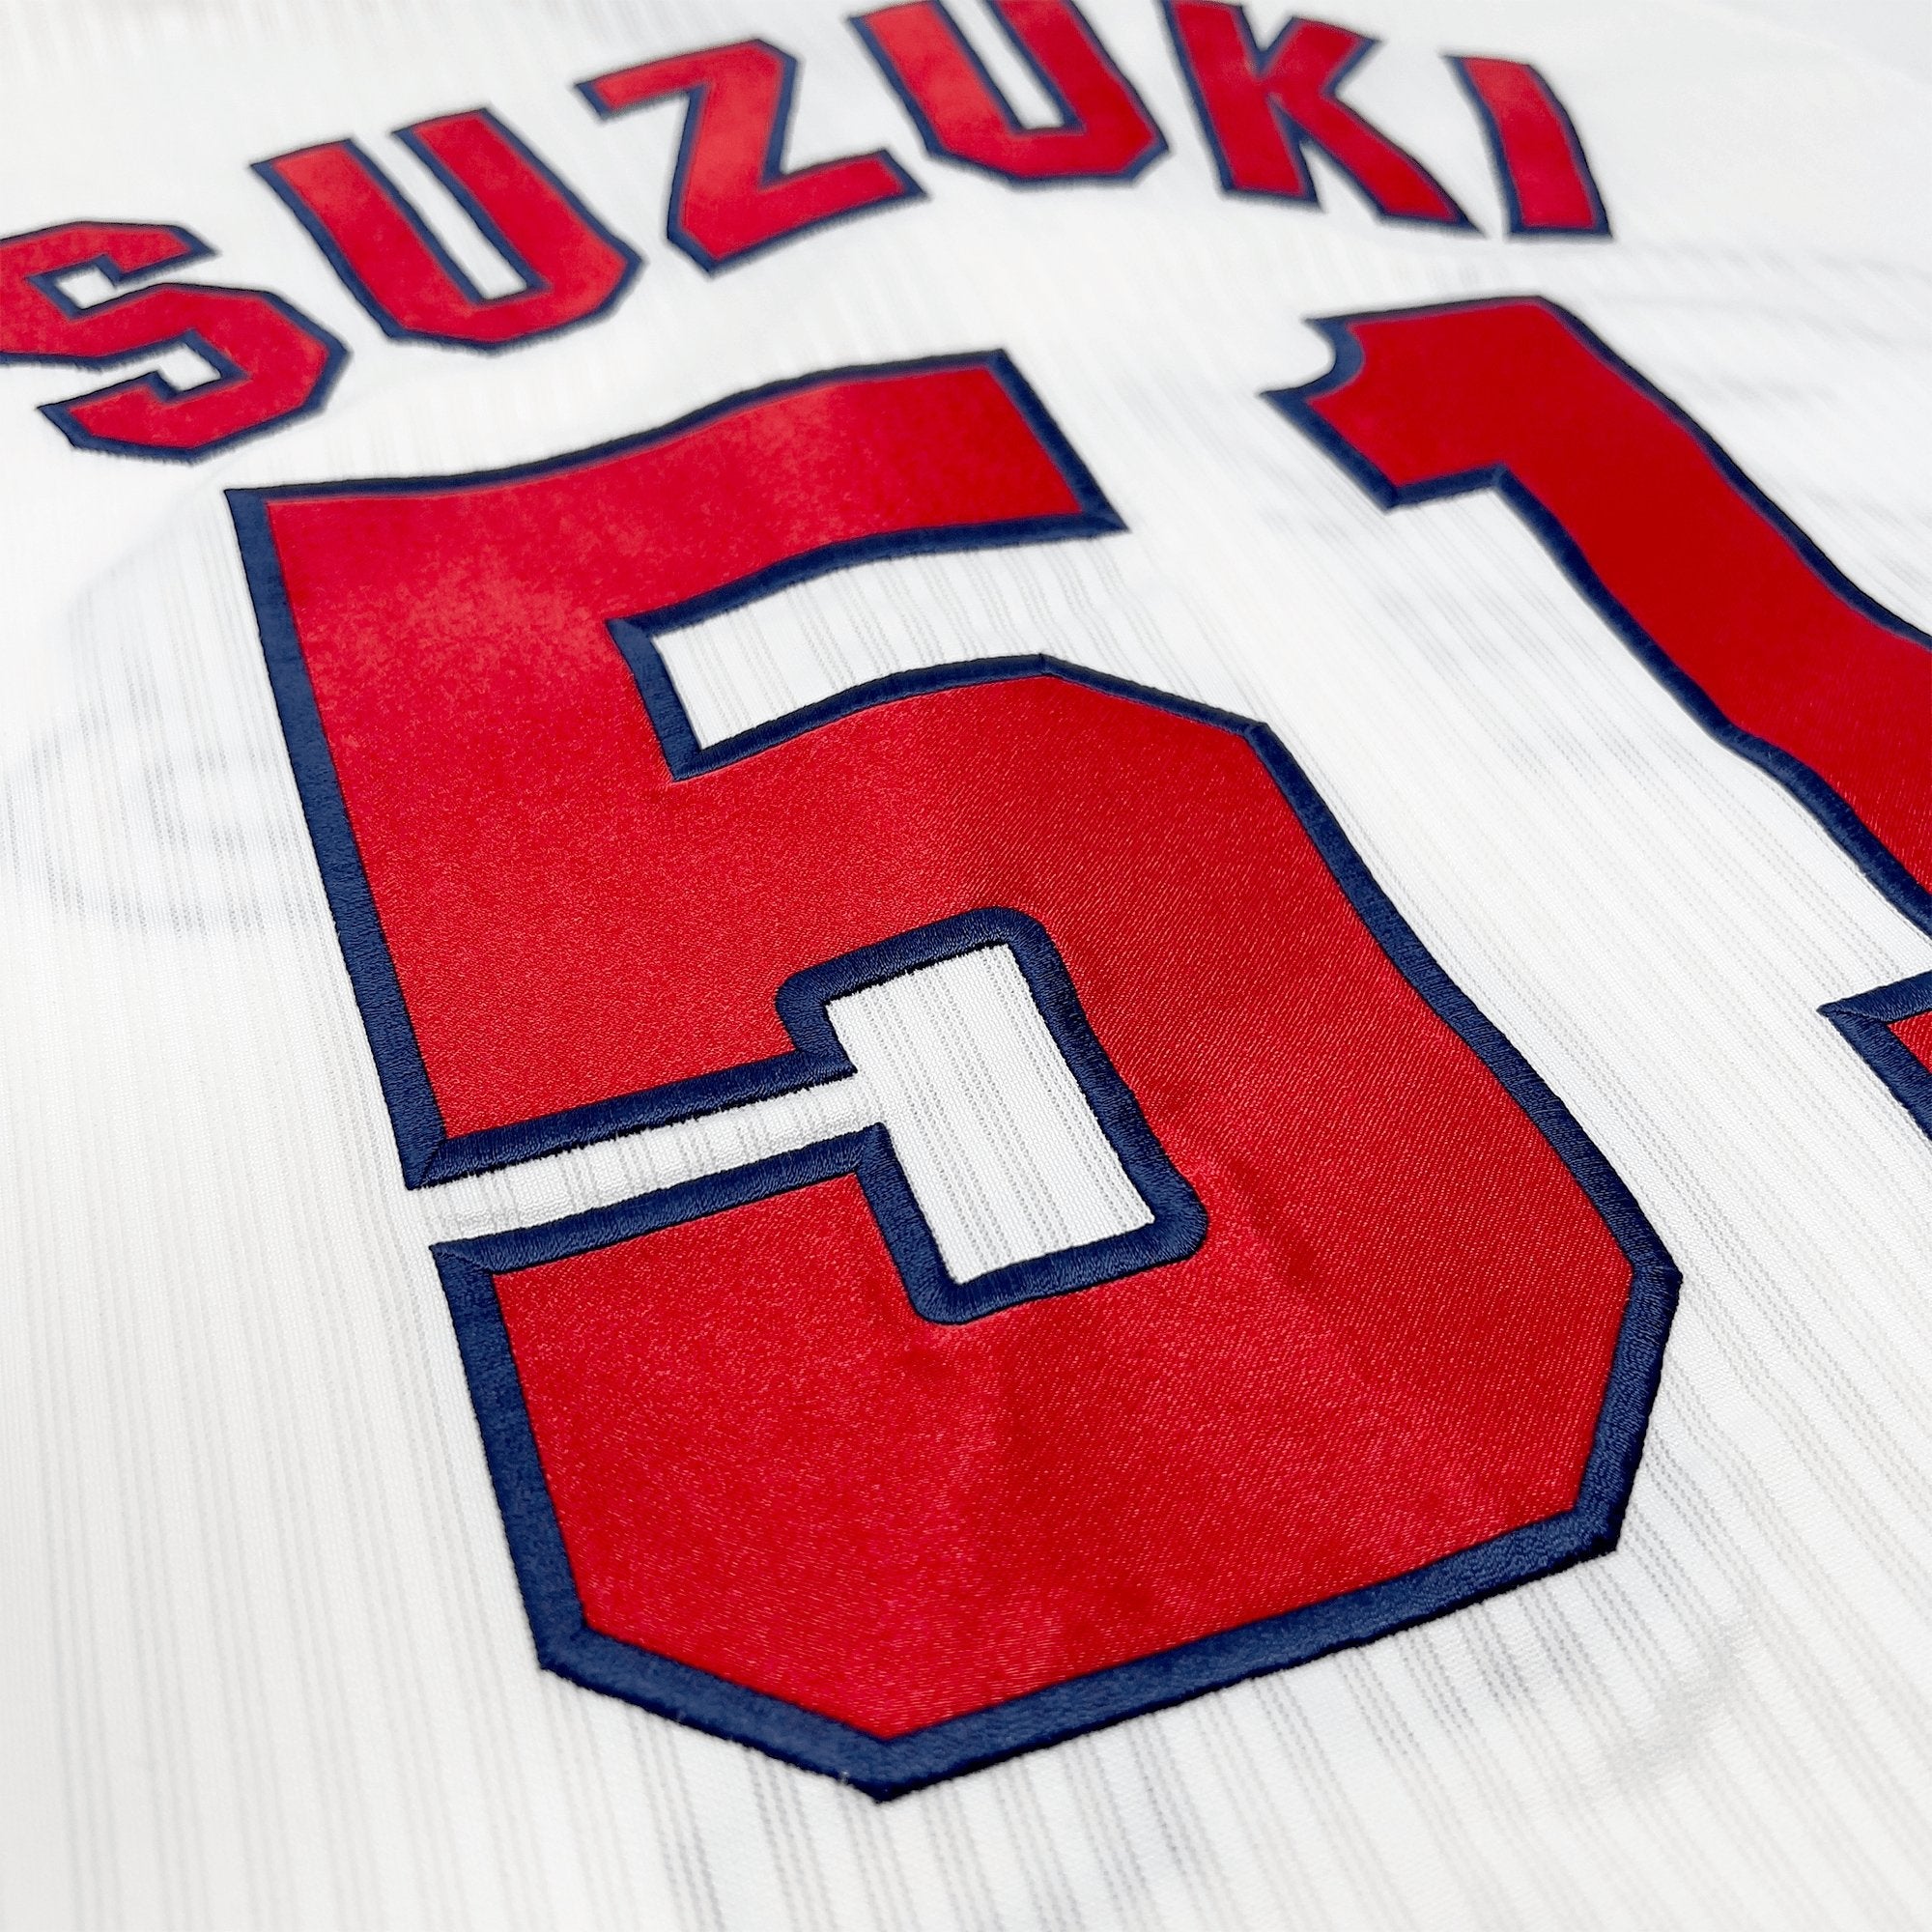 Seiya Suzuki #51 Hiroshima Toyo Carp NPB Baseball Jersey (Japan Size L)